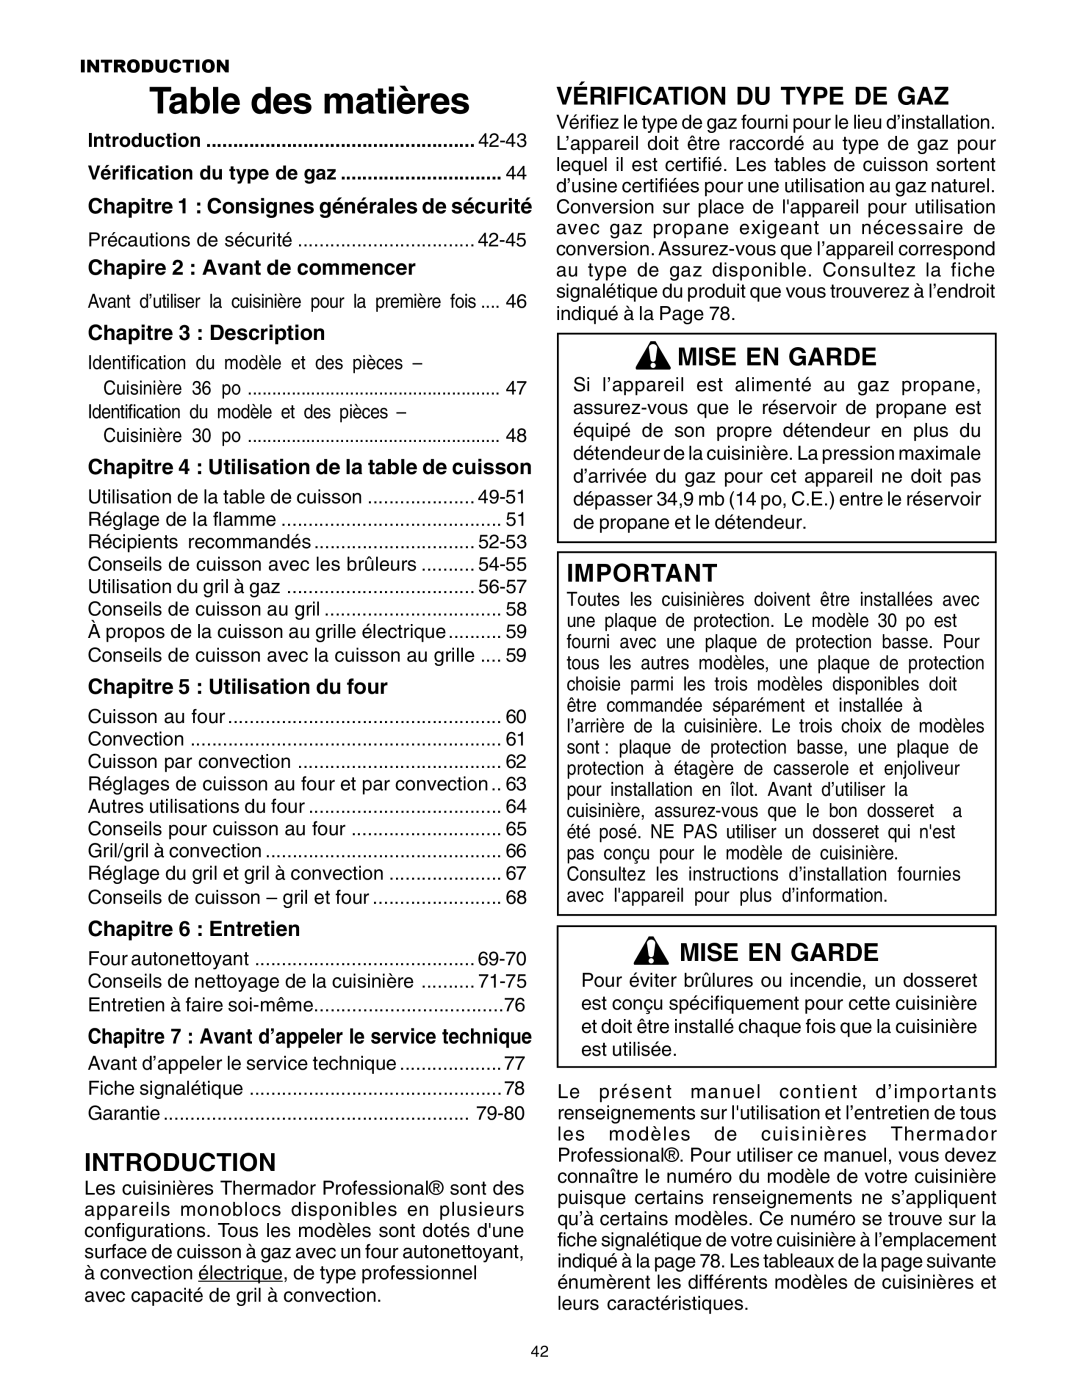 Thermador DP30 manual Vérification Du Type De Gaz, Mise En Garde, Chapire 2 : Avant de commencer, Chapitre 3 : Description 